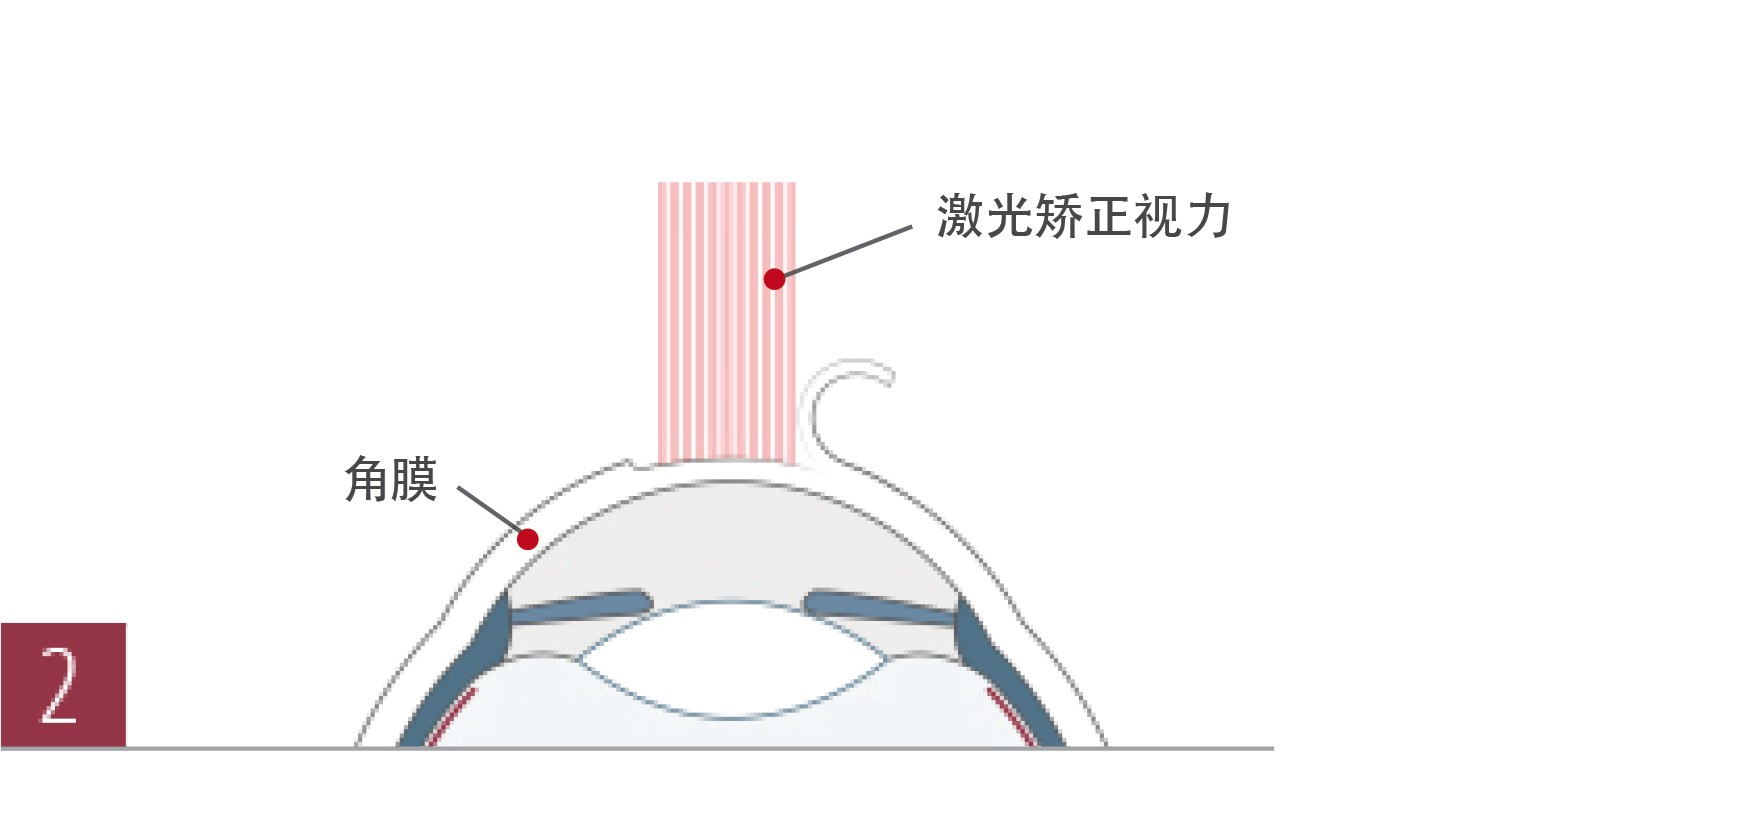 北京德视佳介绍飞秒激光LASIK手术过程